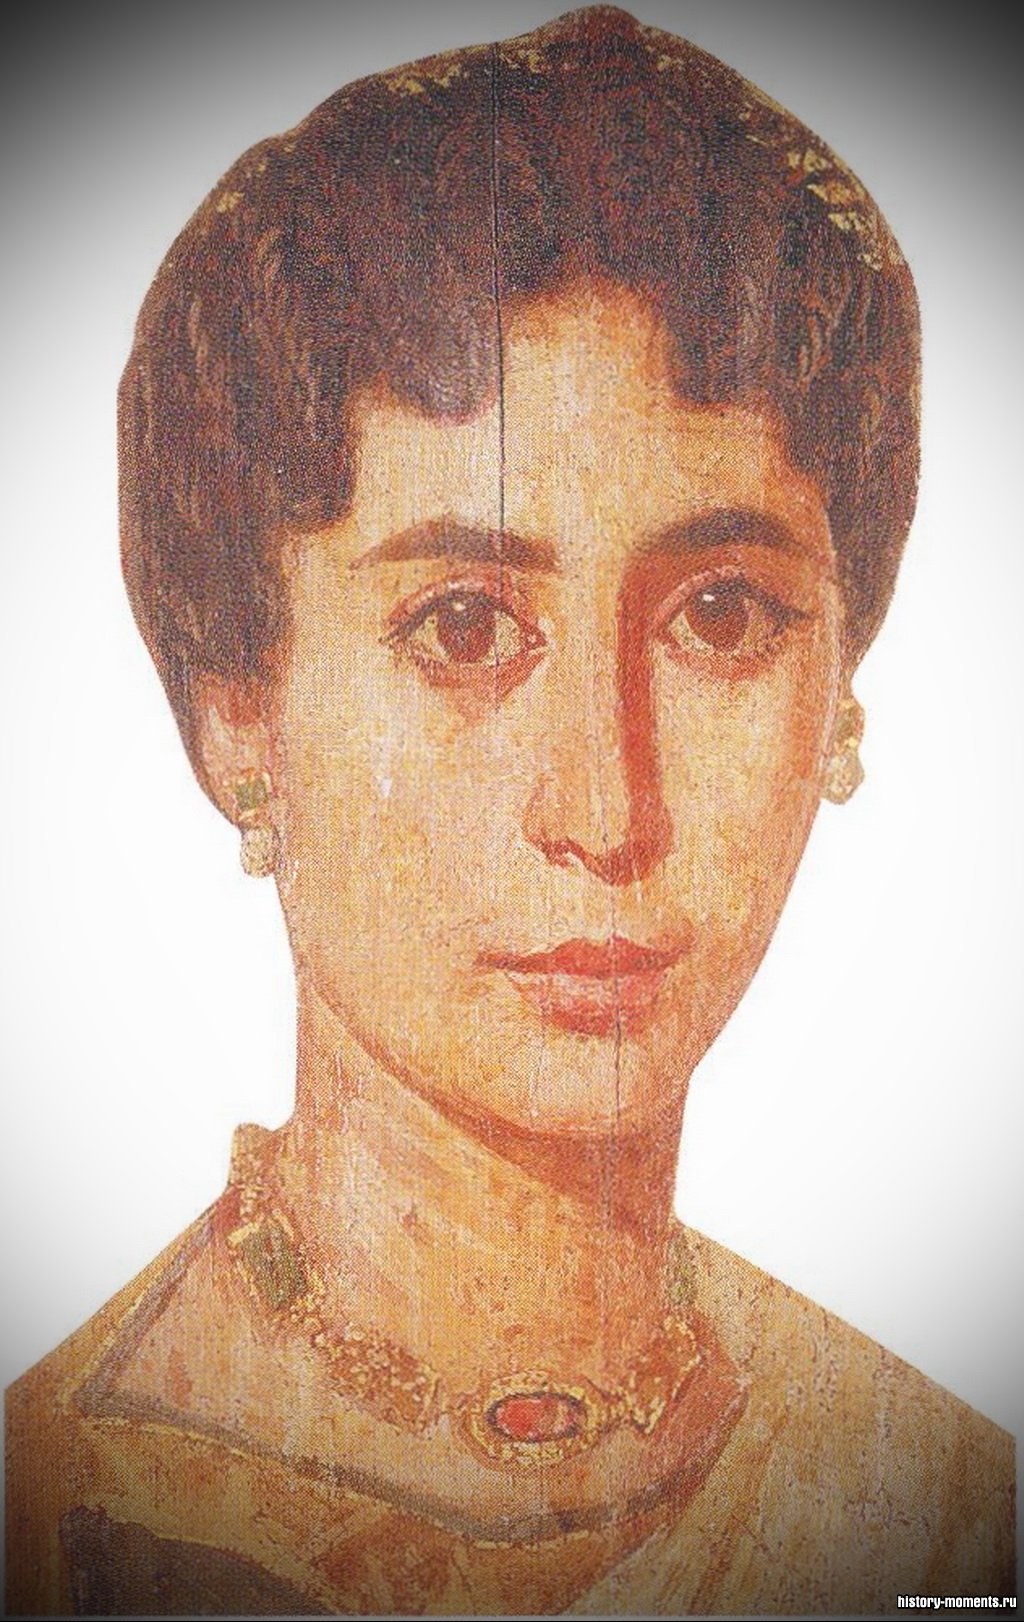 Римский портрет, обнаруженный на одном из саркофагов в Египте, продолжает традицию надгробных изображений умерших.